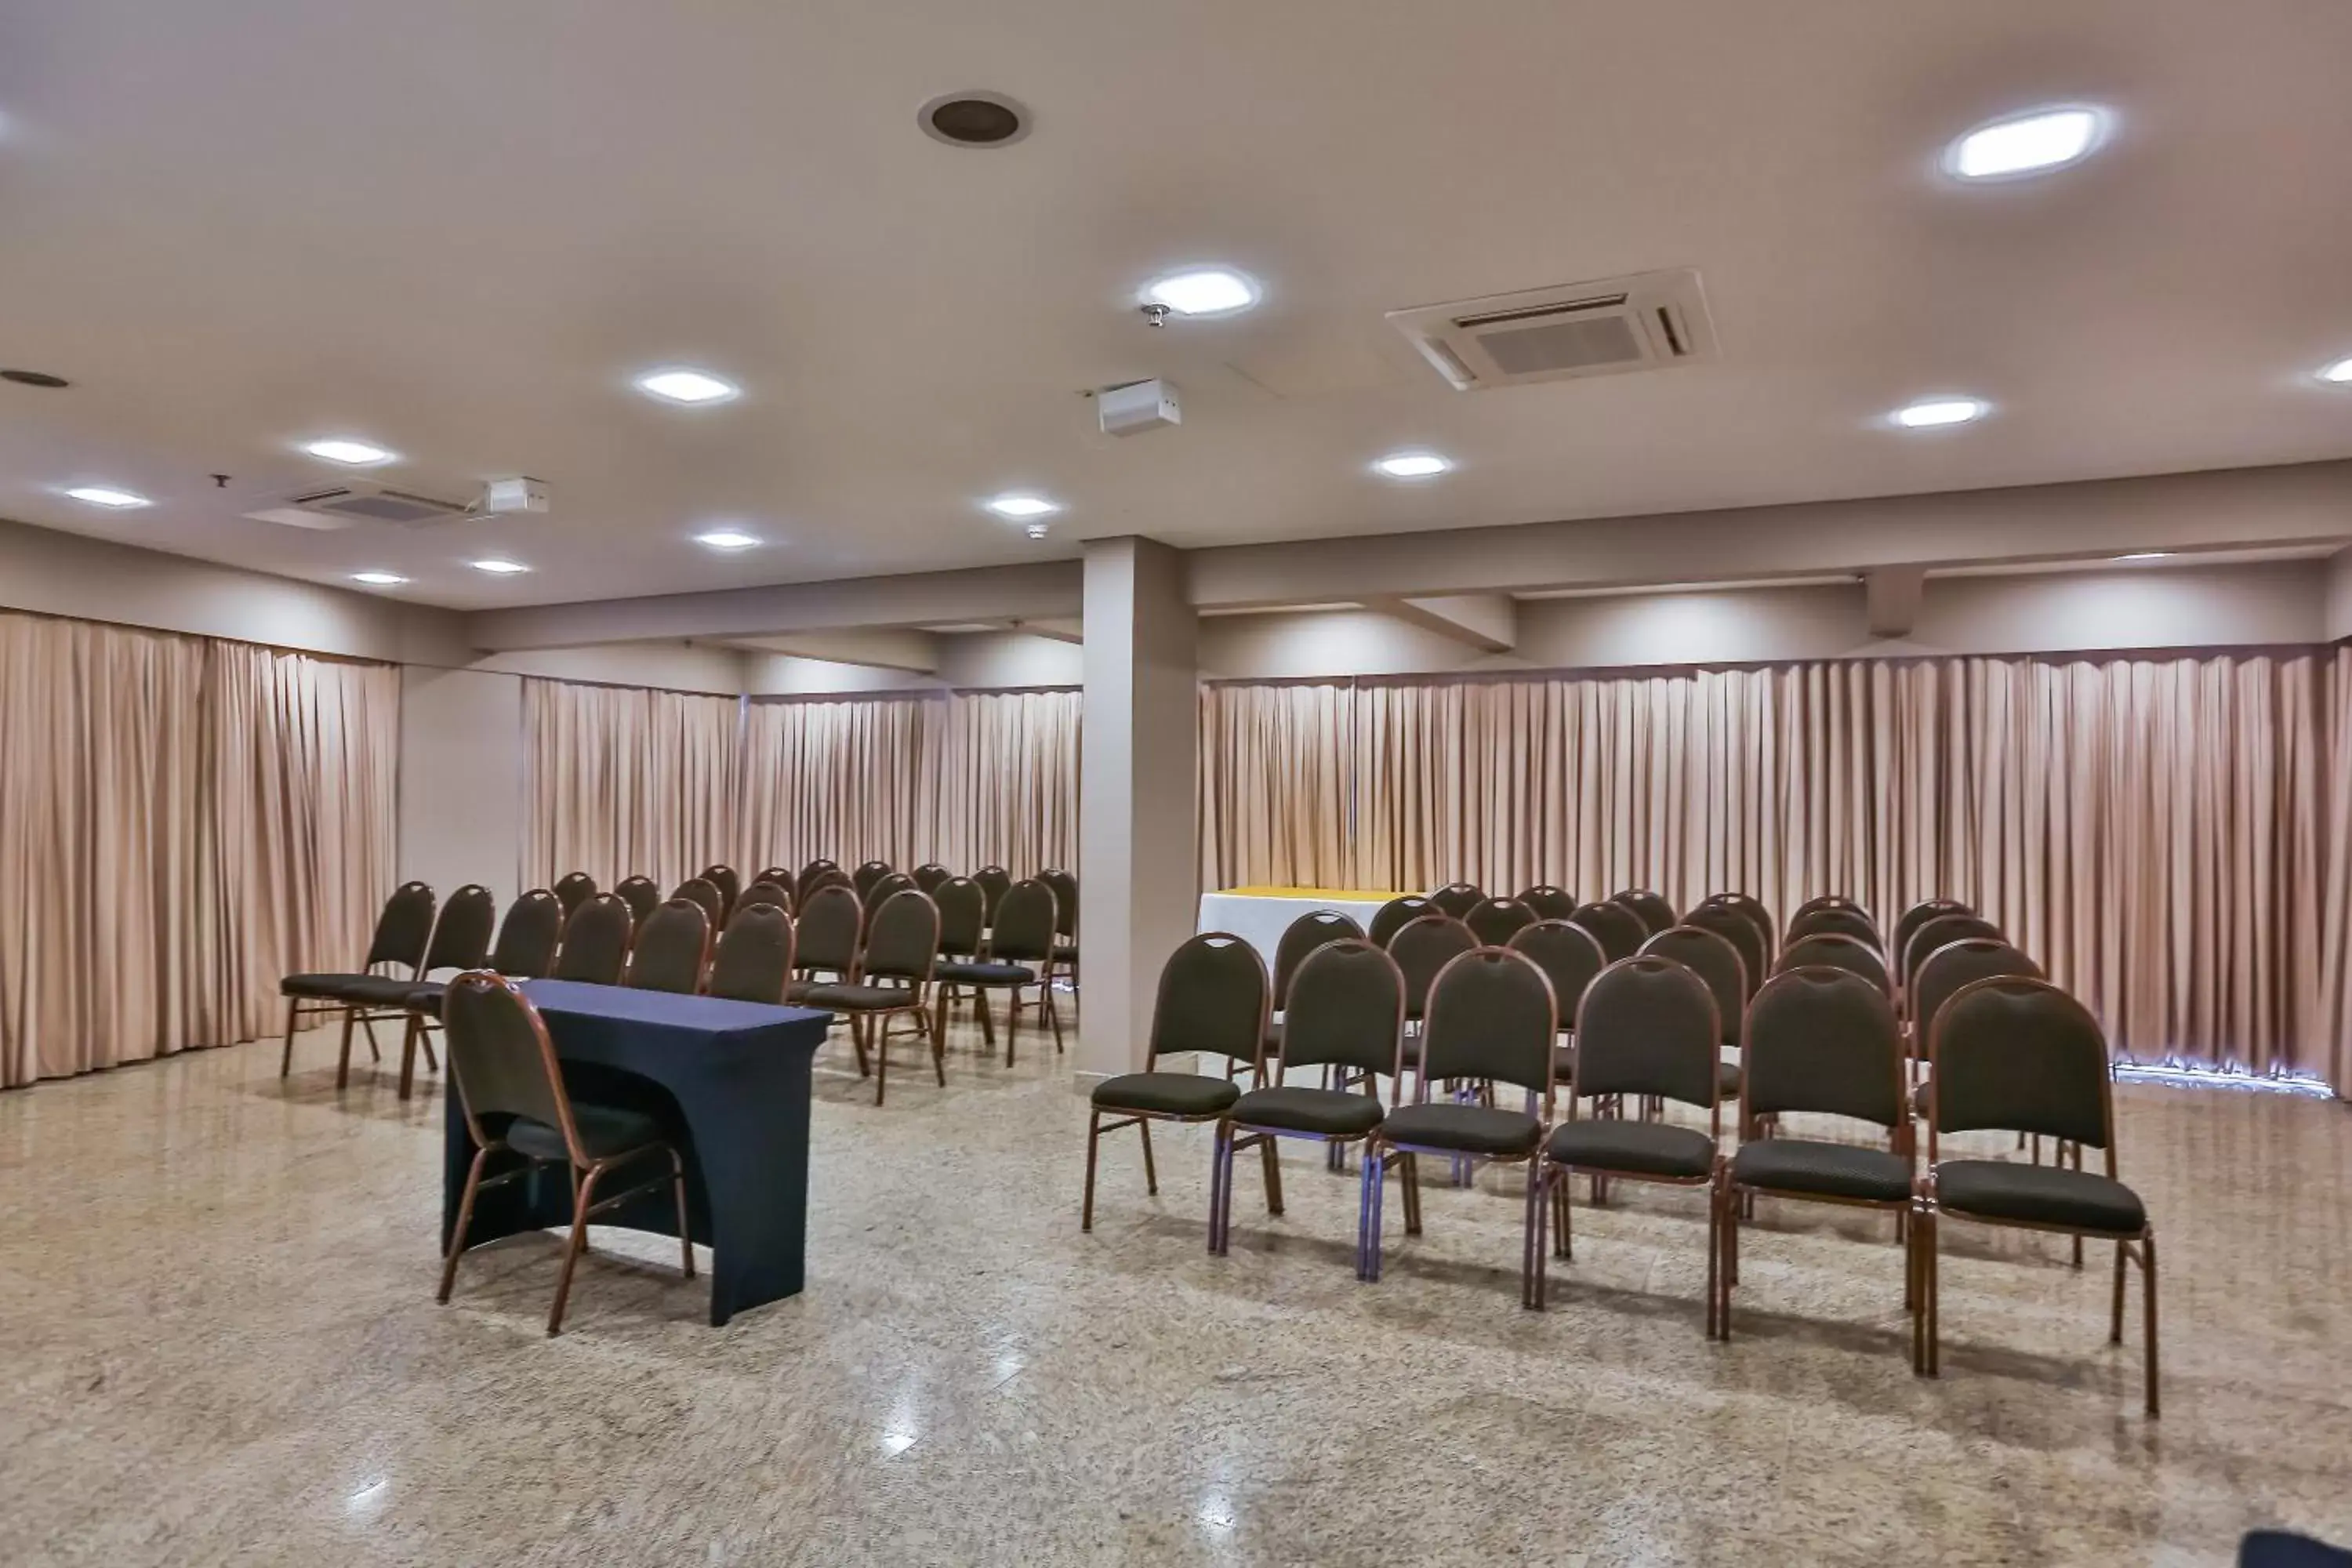 Meeting/conference room in Comfort Suites Brasília